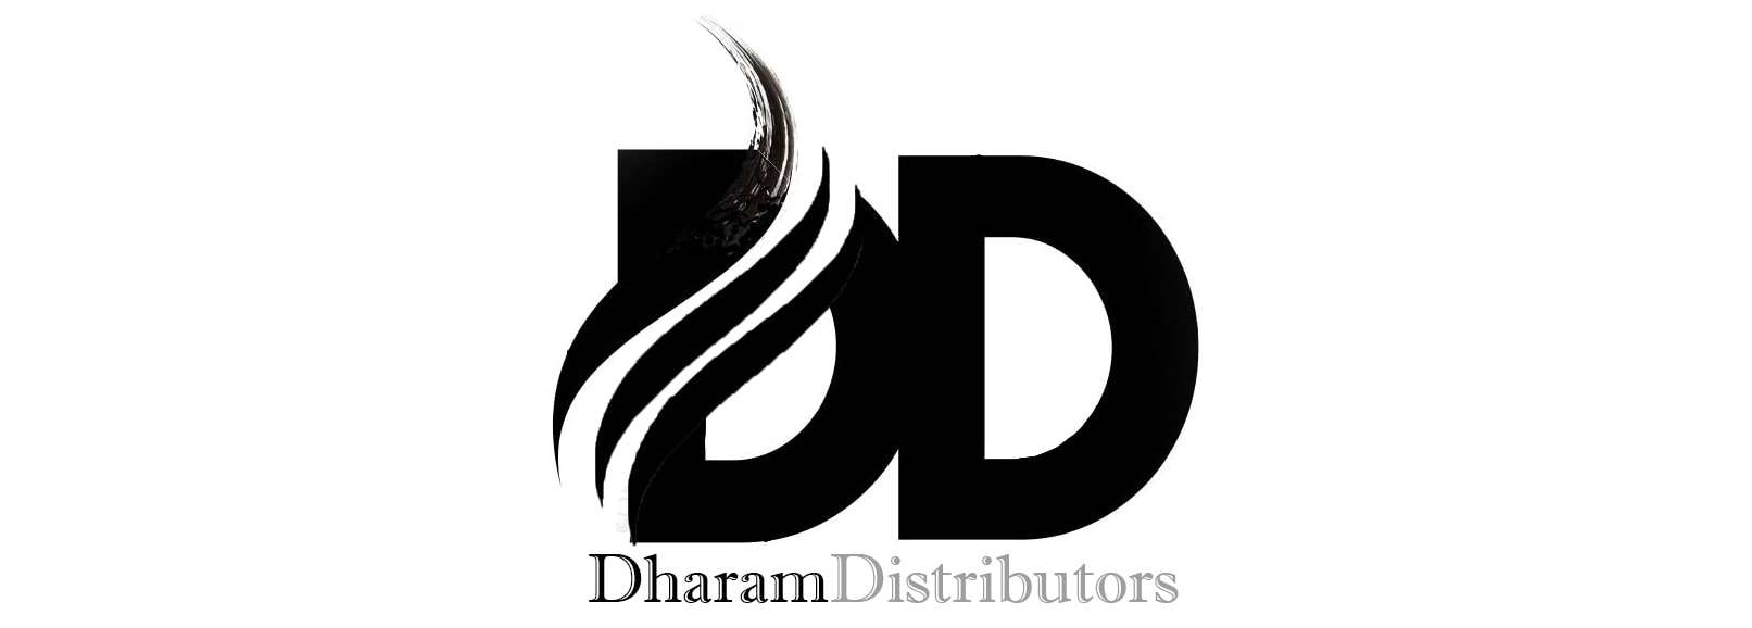 dharam-distributors